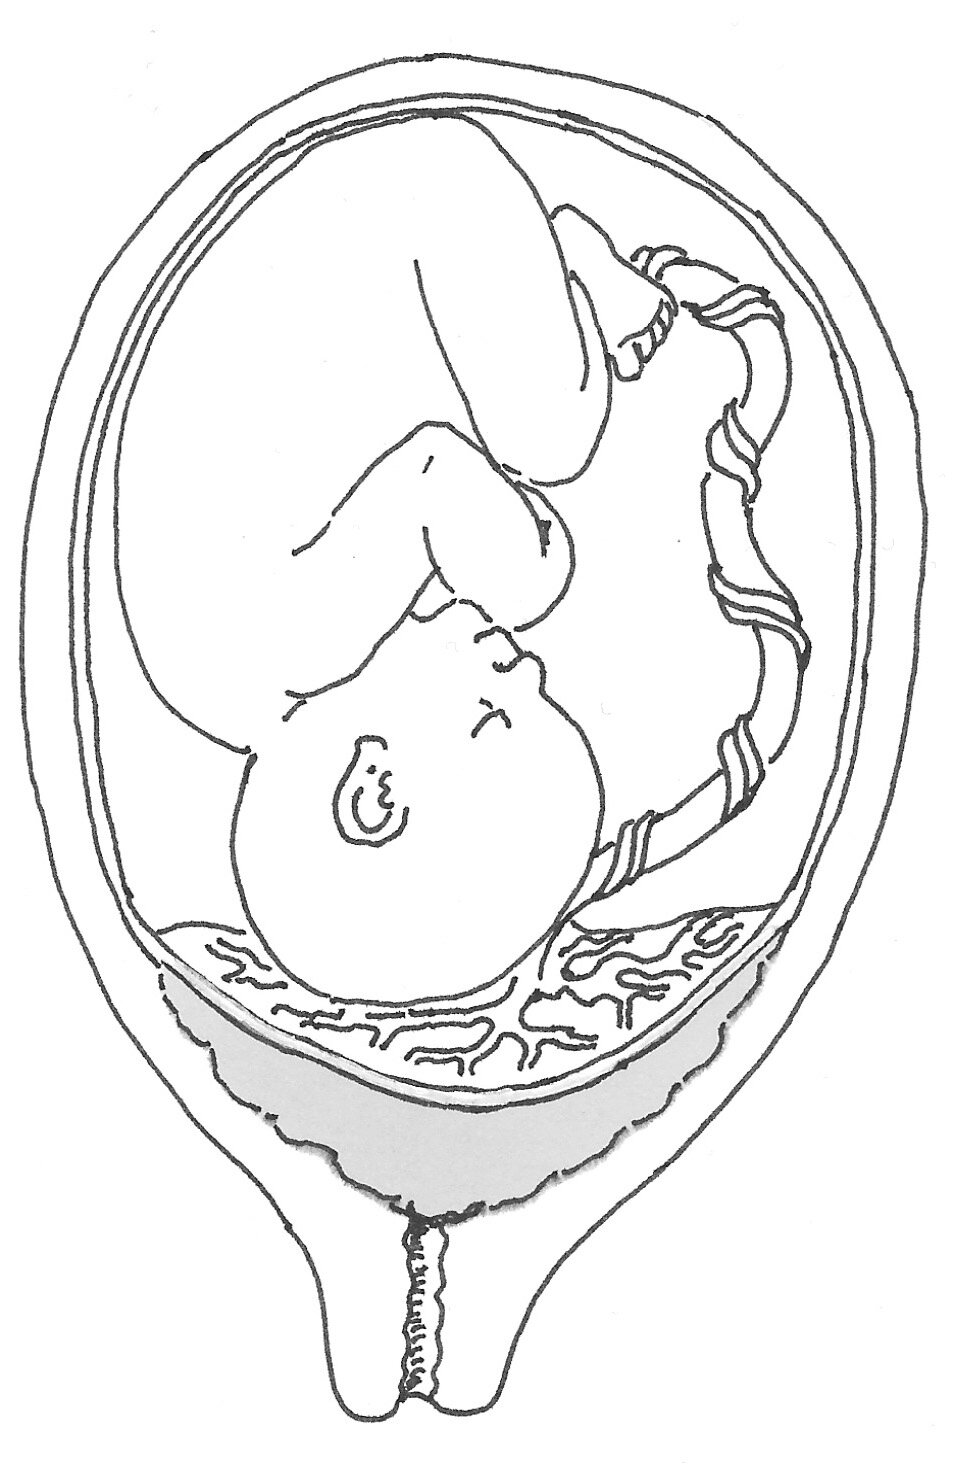 Foranliggende moderkage (Placenta prævia)